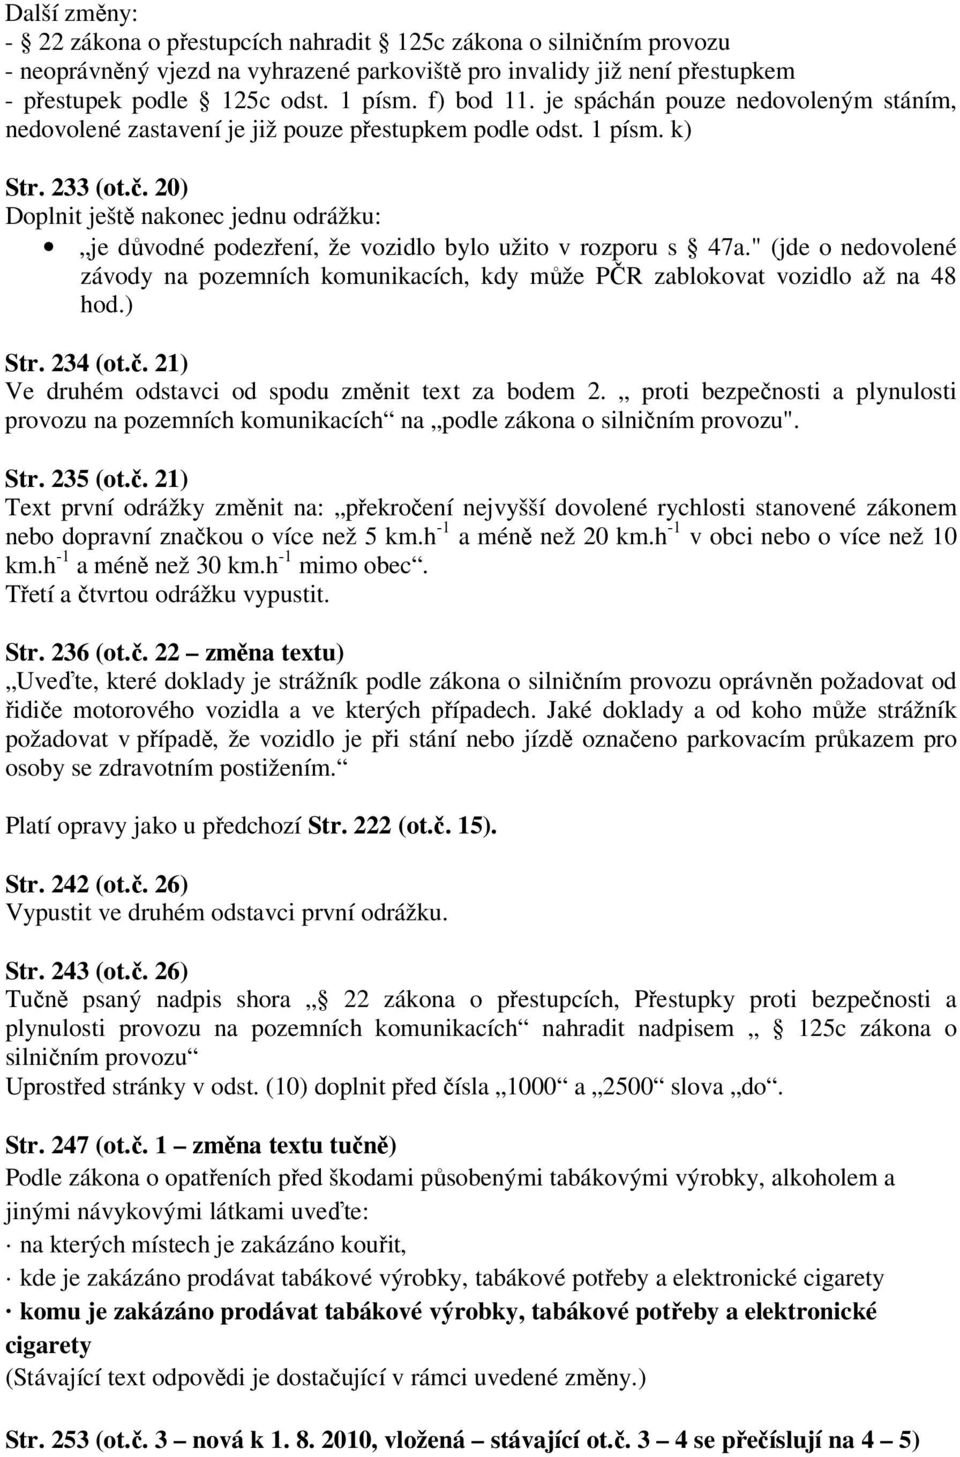 20) Doplnit ještě nakonec jednu odrážku: je důvodné podezření, že vozidlo bylo užito v rozporu s 47a." (jde o nedovolené závody na pozemních komunikacích, kdy může PČR zablokovat vozidlo až na 48 hod.